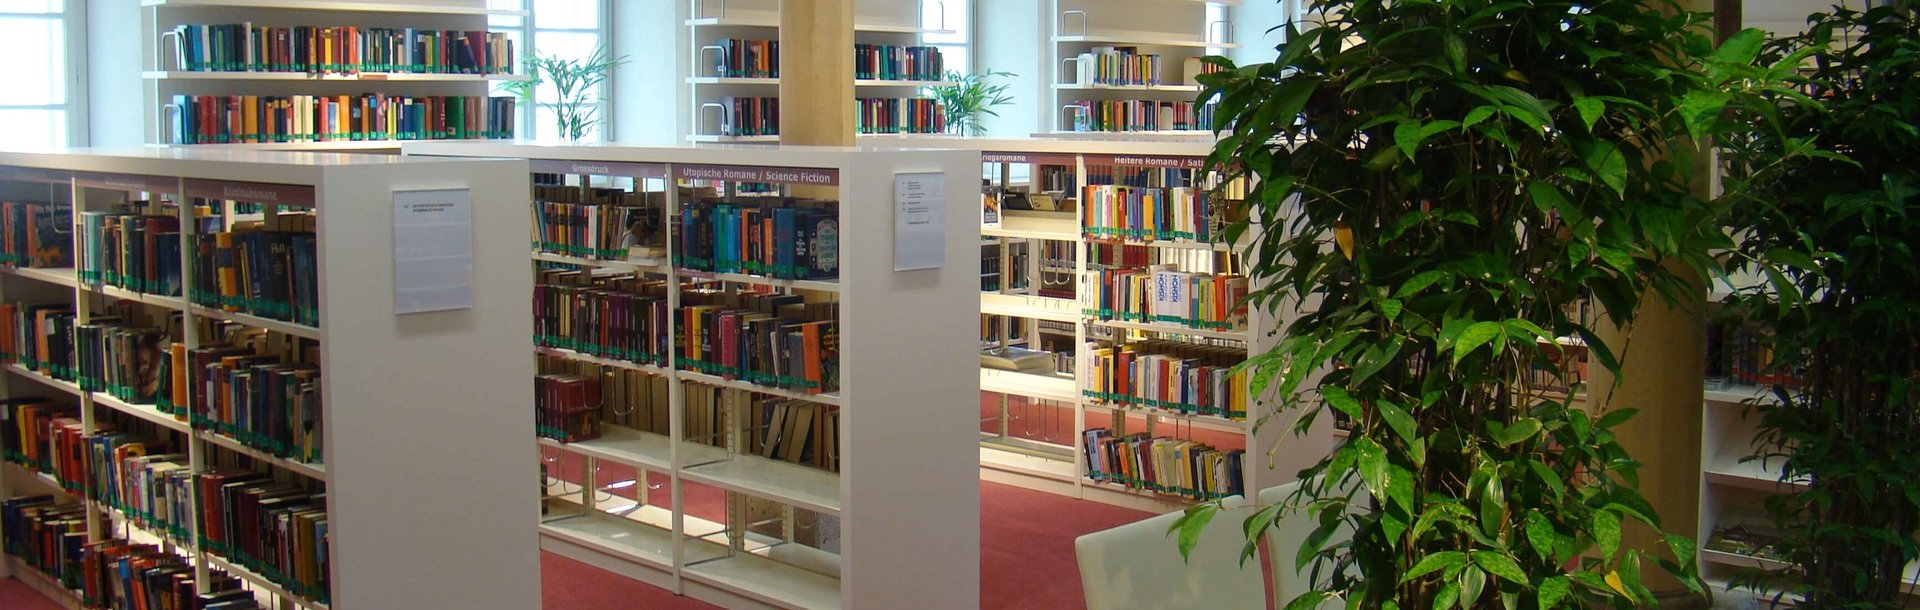 Stadtbücherei - Bücherregale